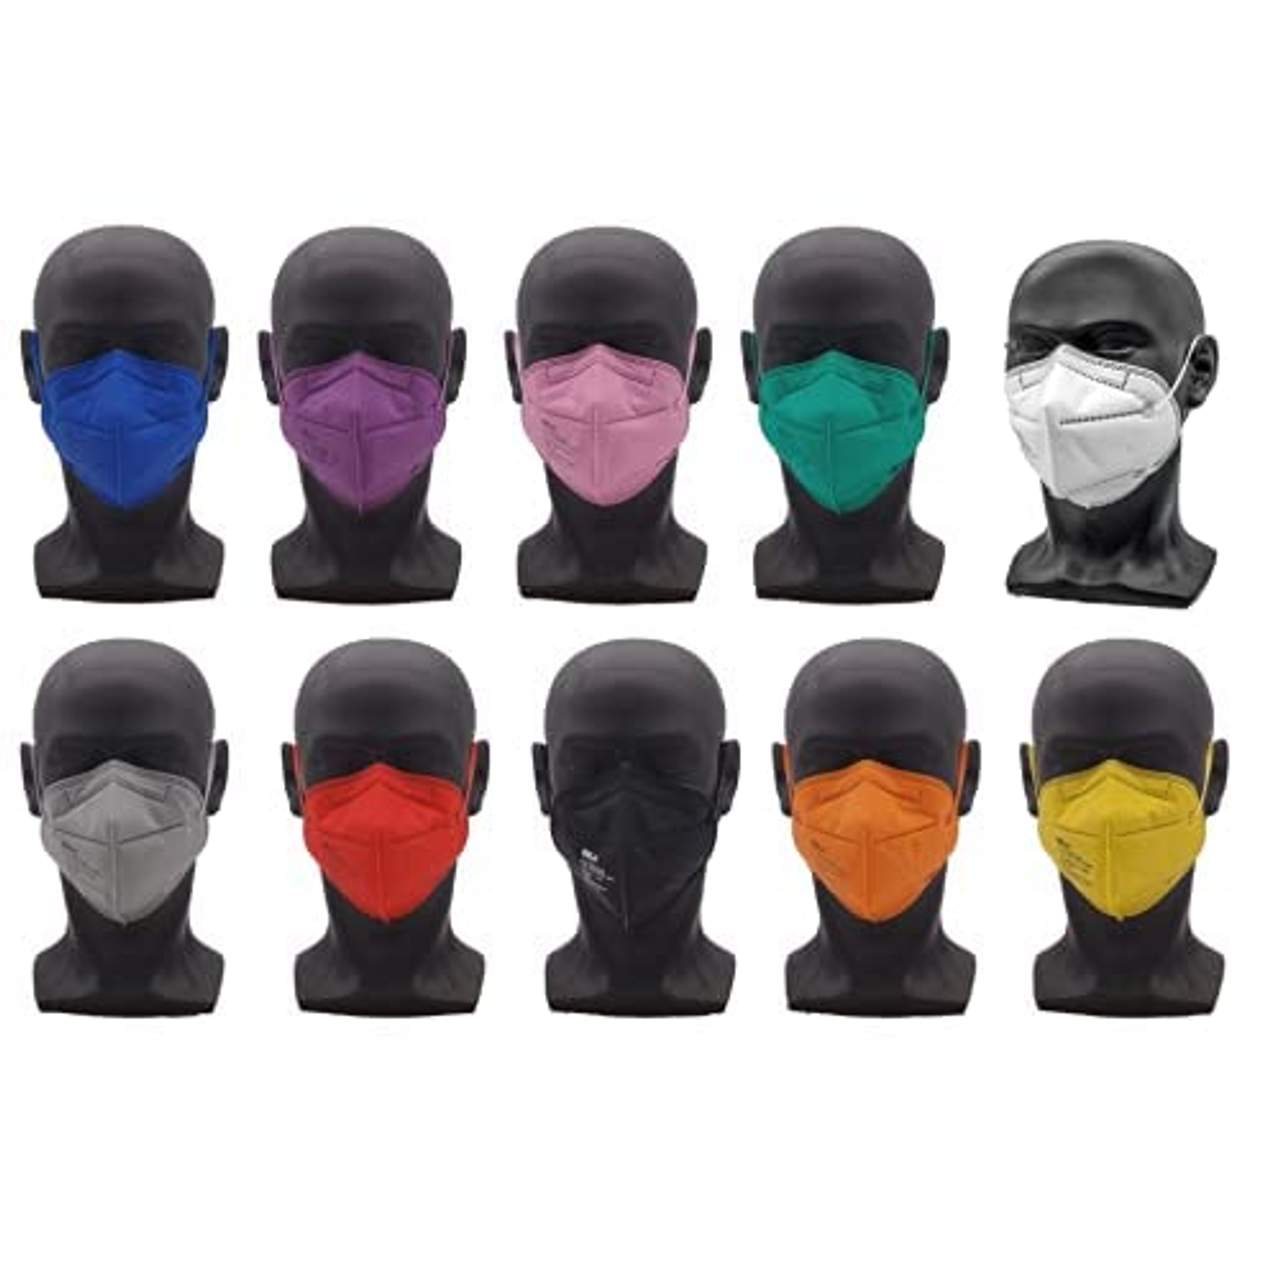 20 Bunte FFP2 Masken farbig gemischt